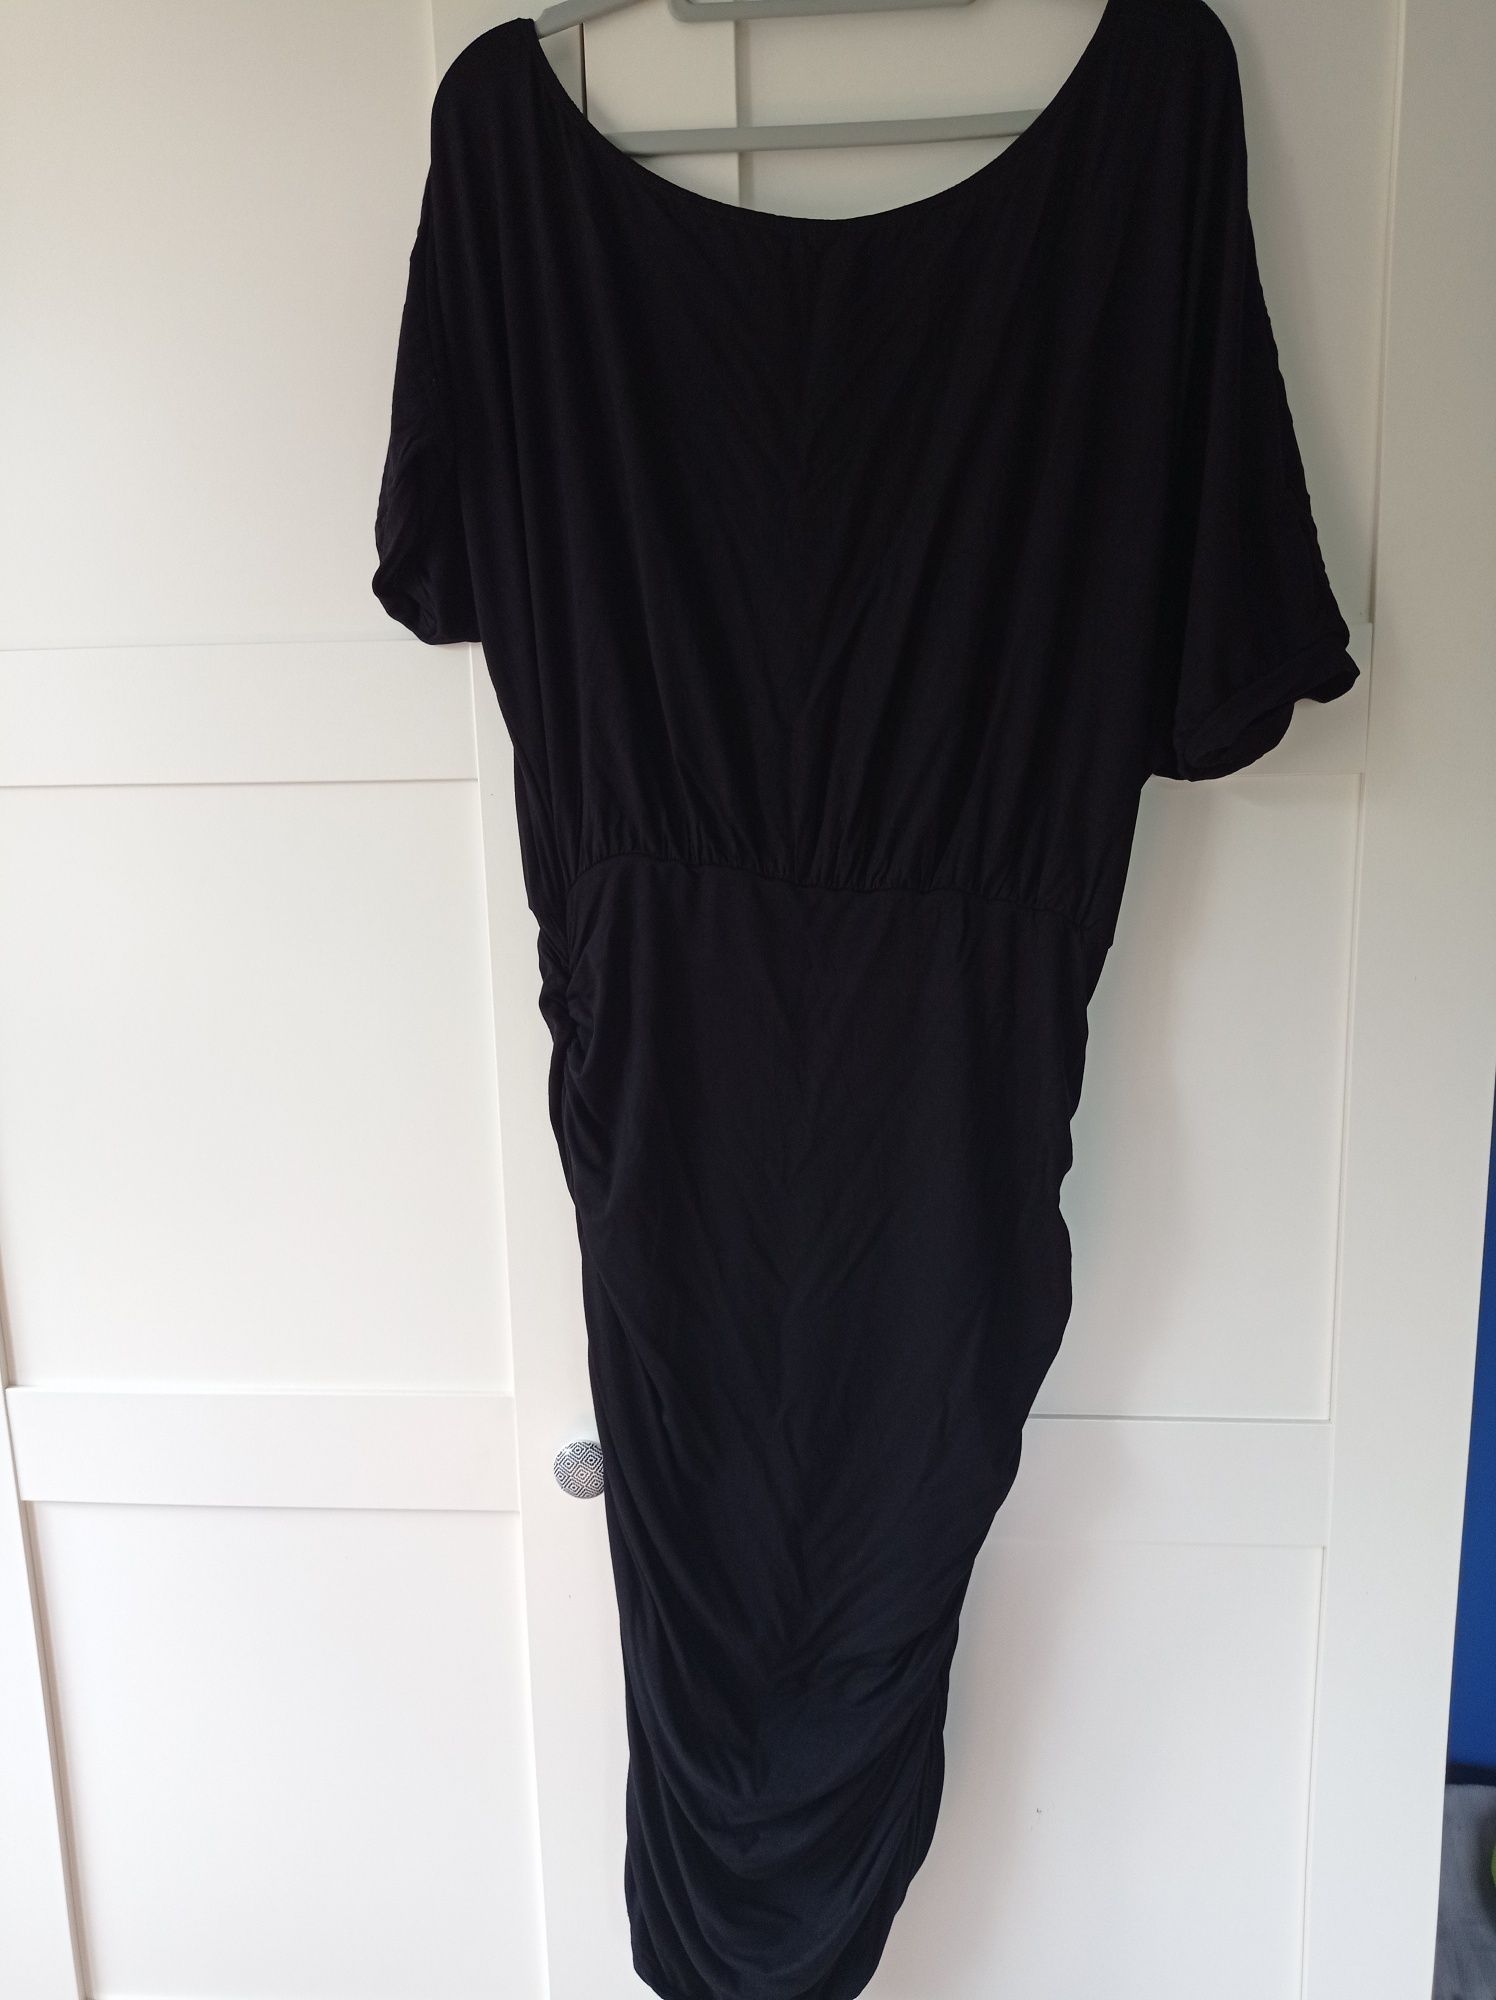 Czarna sukienka marszczona typu nietoperz 42